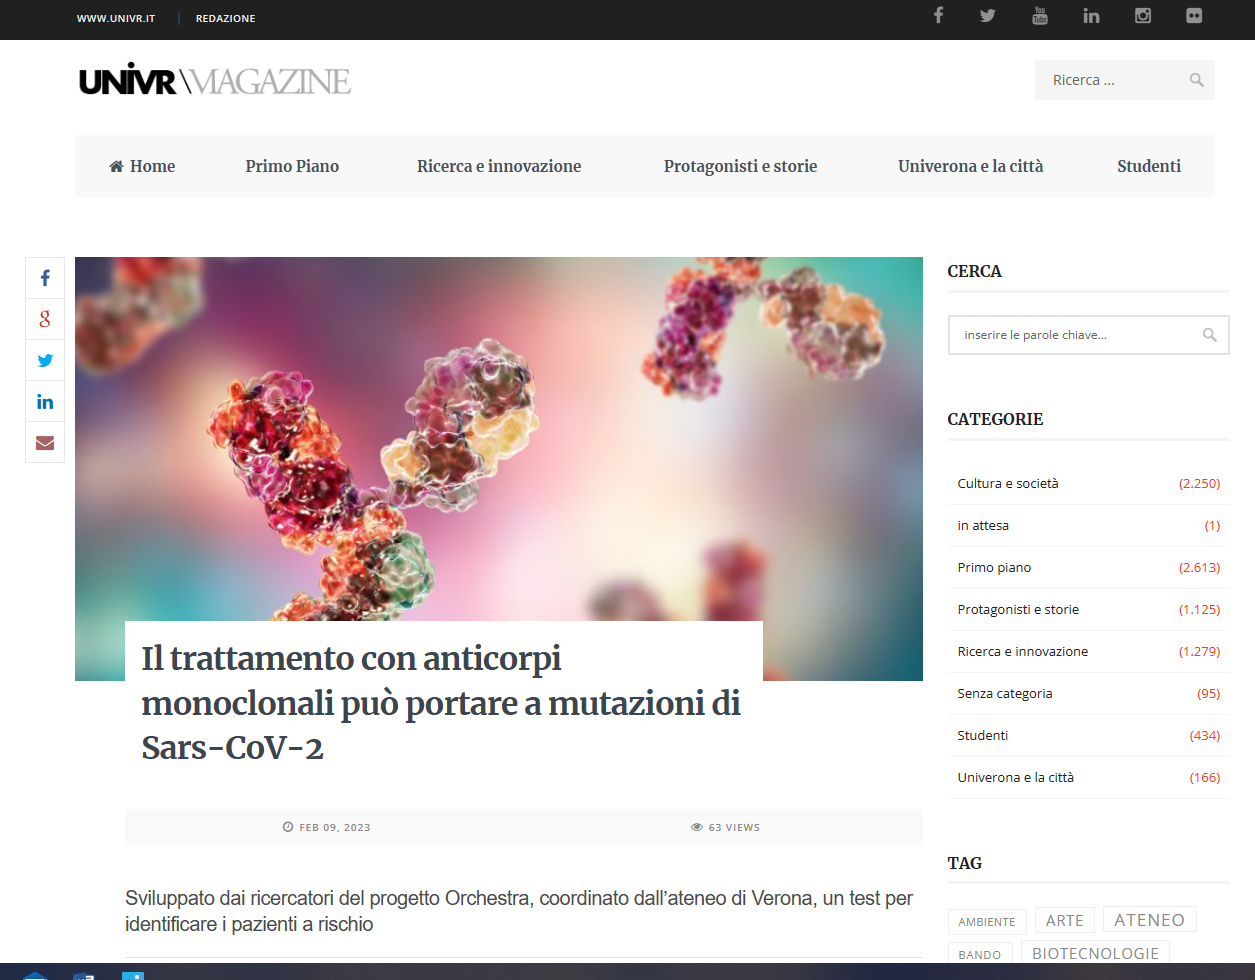 Il trattamento con anticorpi monoclonali può portare a mutazioni di Sars-CoV-2